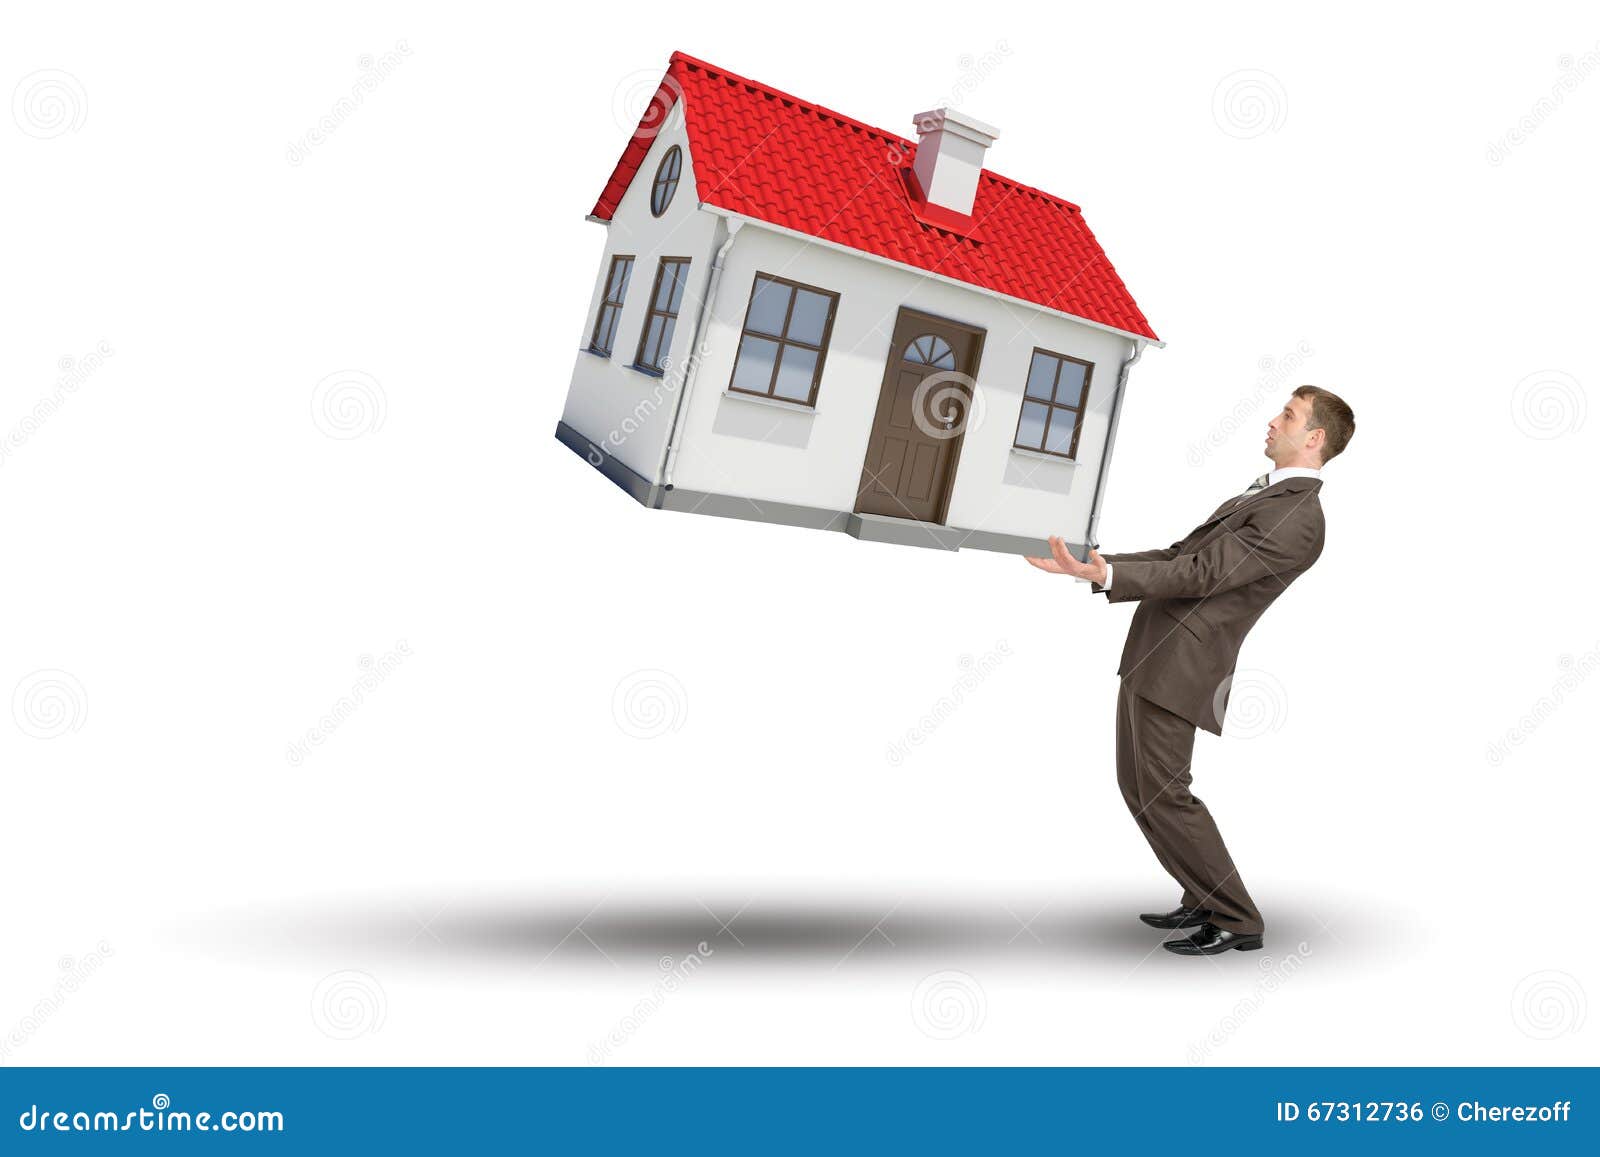 Поднять большой дом. Дом в руках. Мужчина держит в руках домик. Человек поднимает дом. Бизнесмен держит домик.